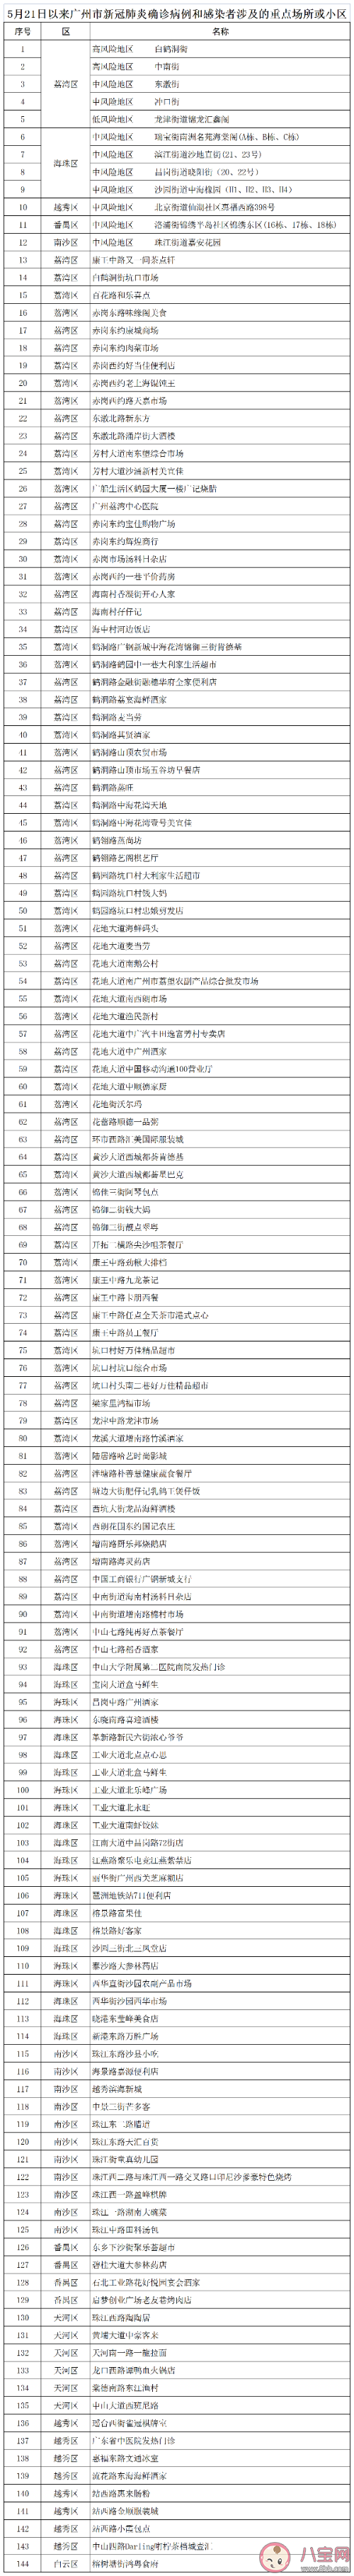 广州公布144个涉疫重点场所或小区名单 广州最新隔离政策规定